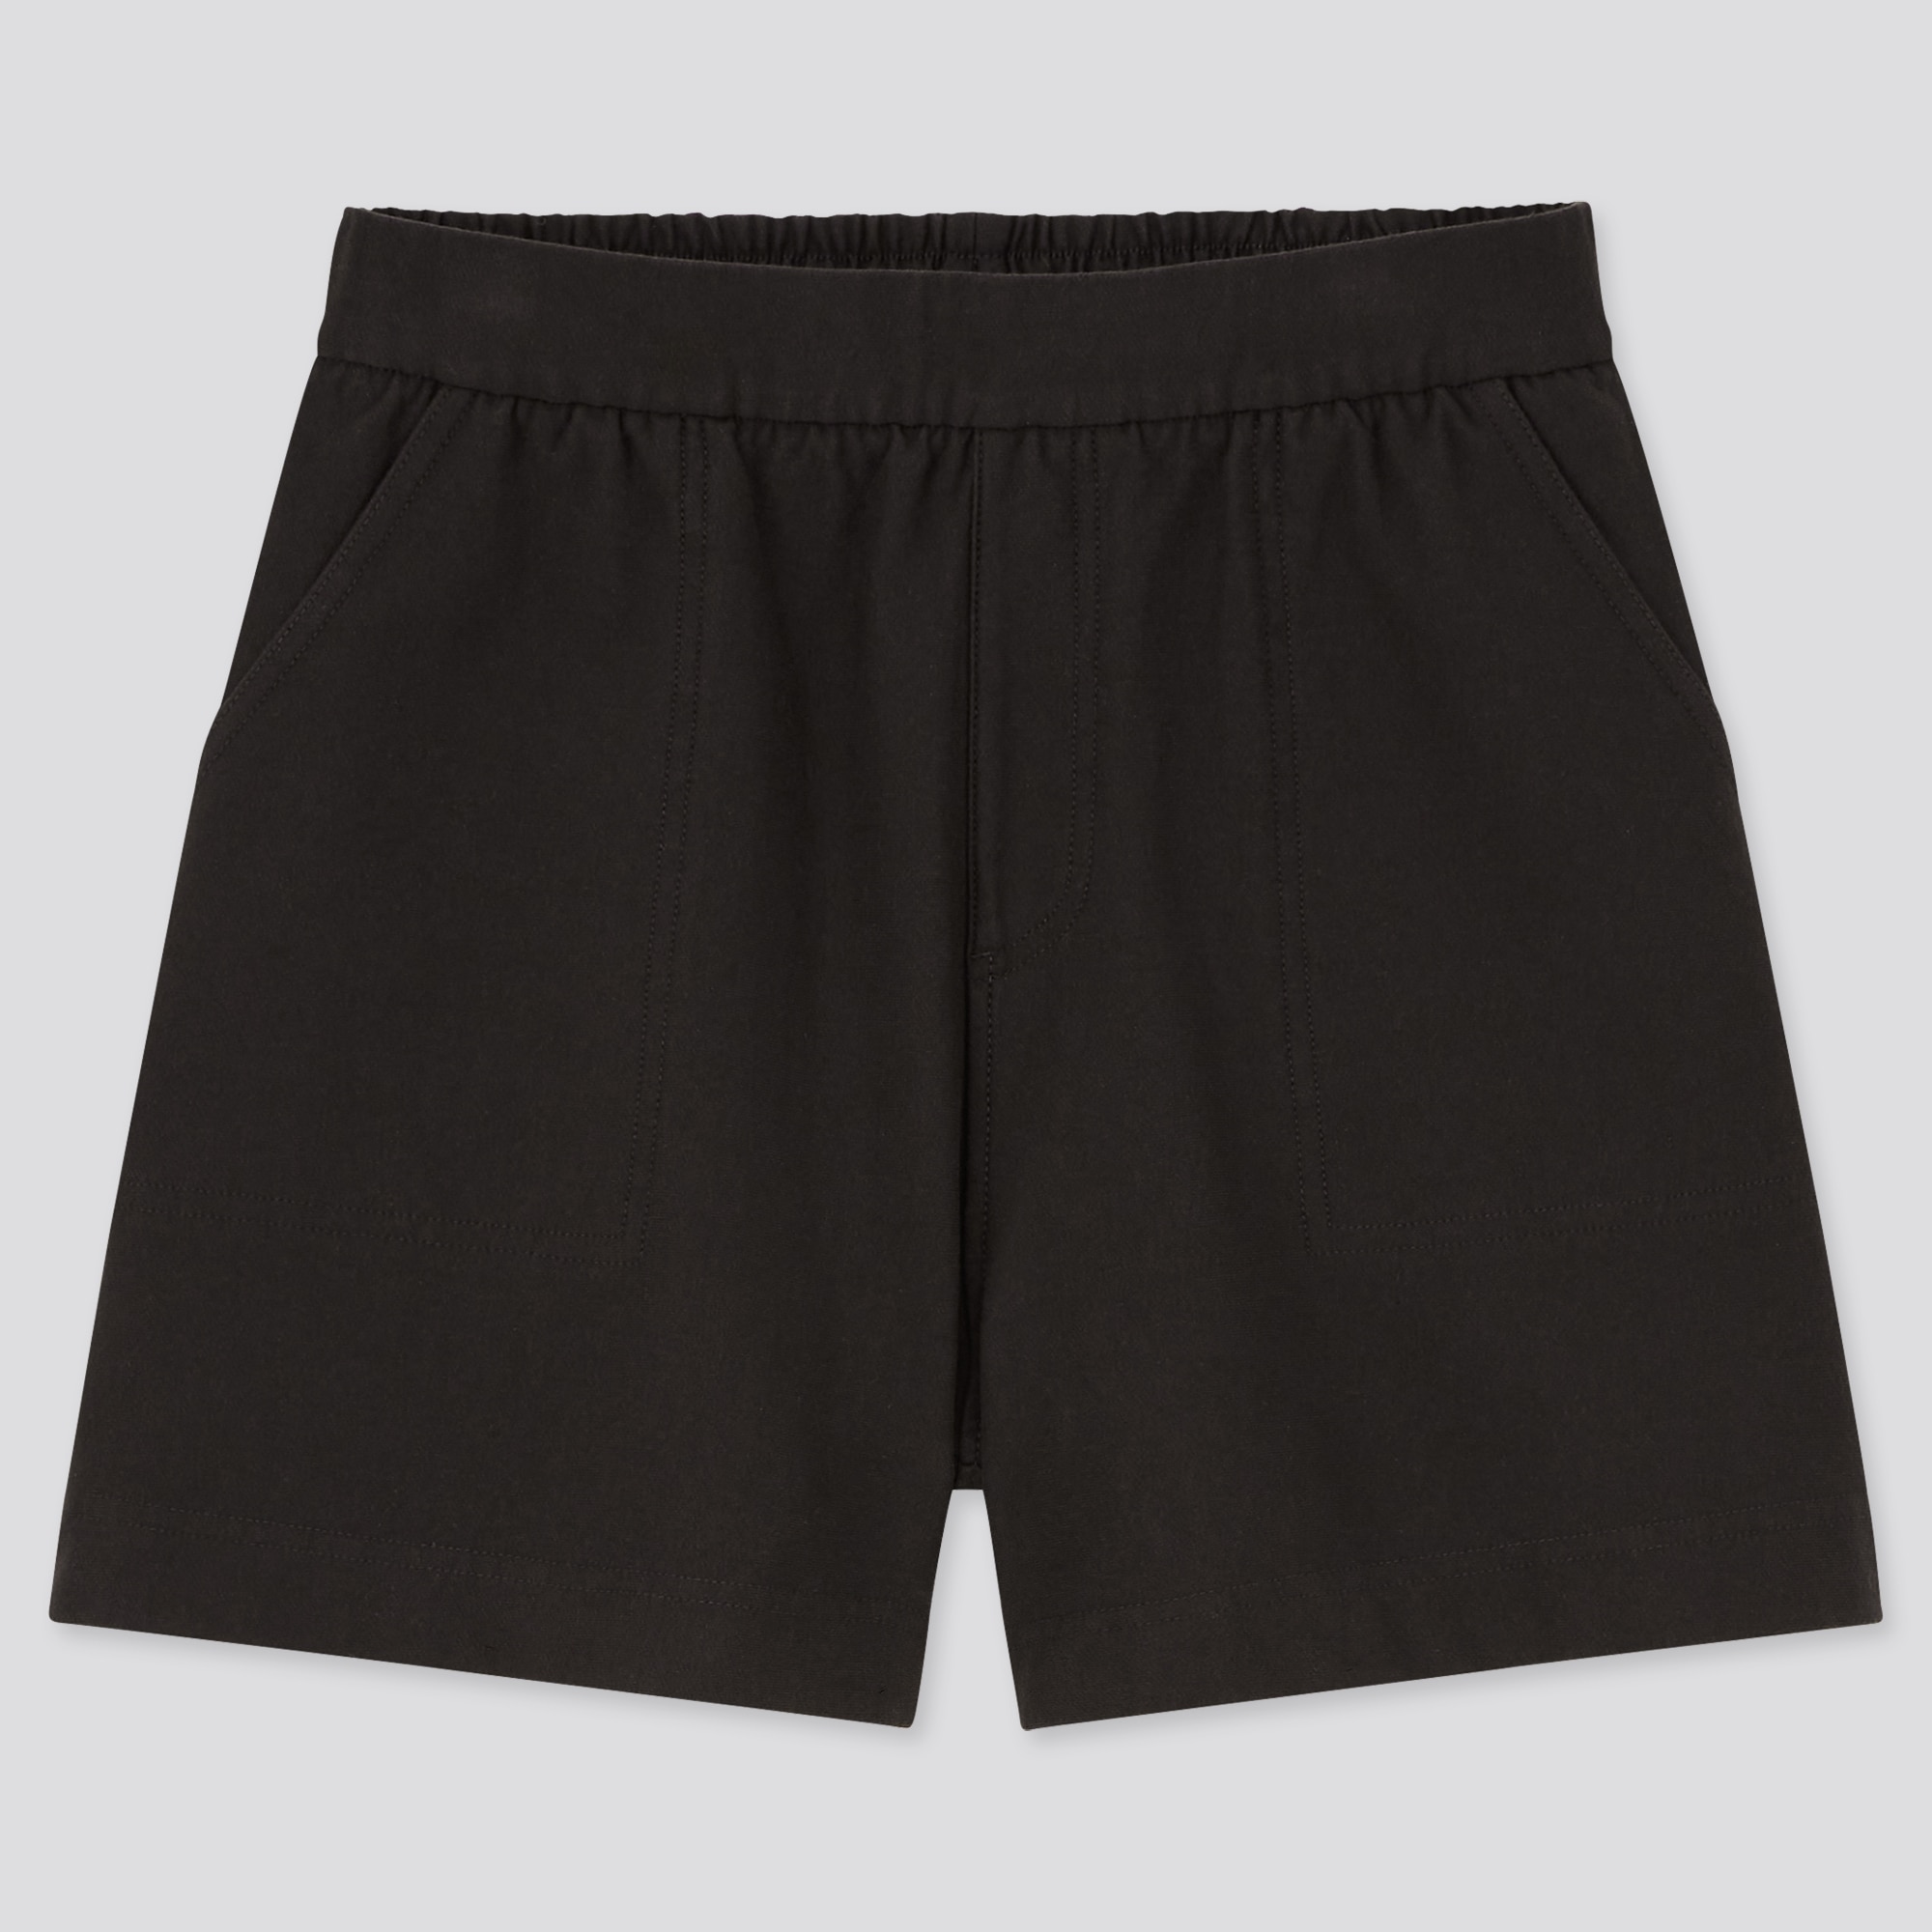 Uniqlo Uniqlo Swim Active Shorts (5.5) Black Size Medium